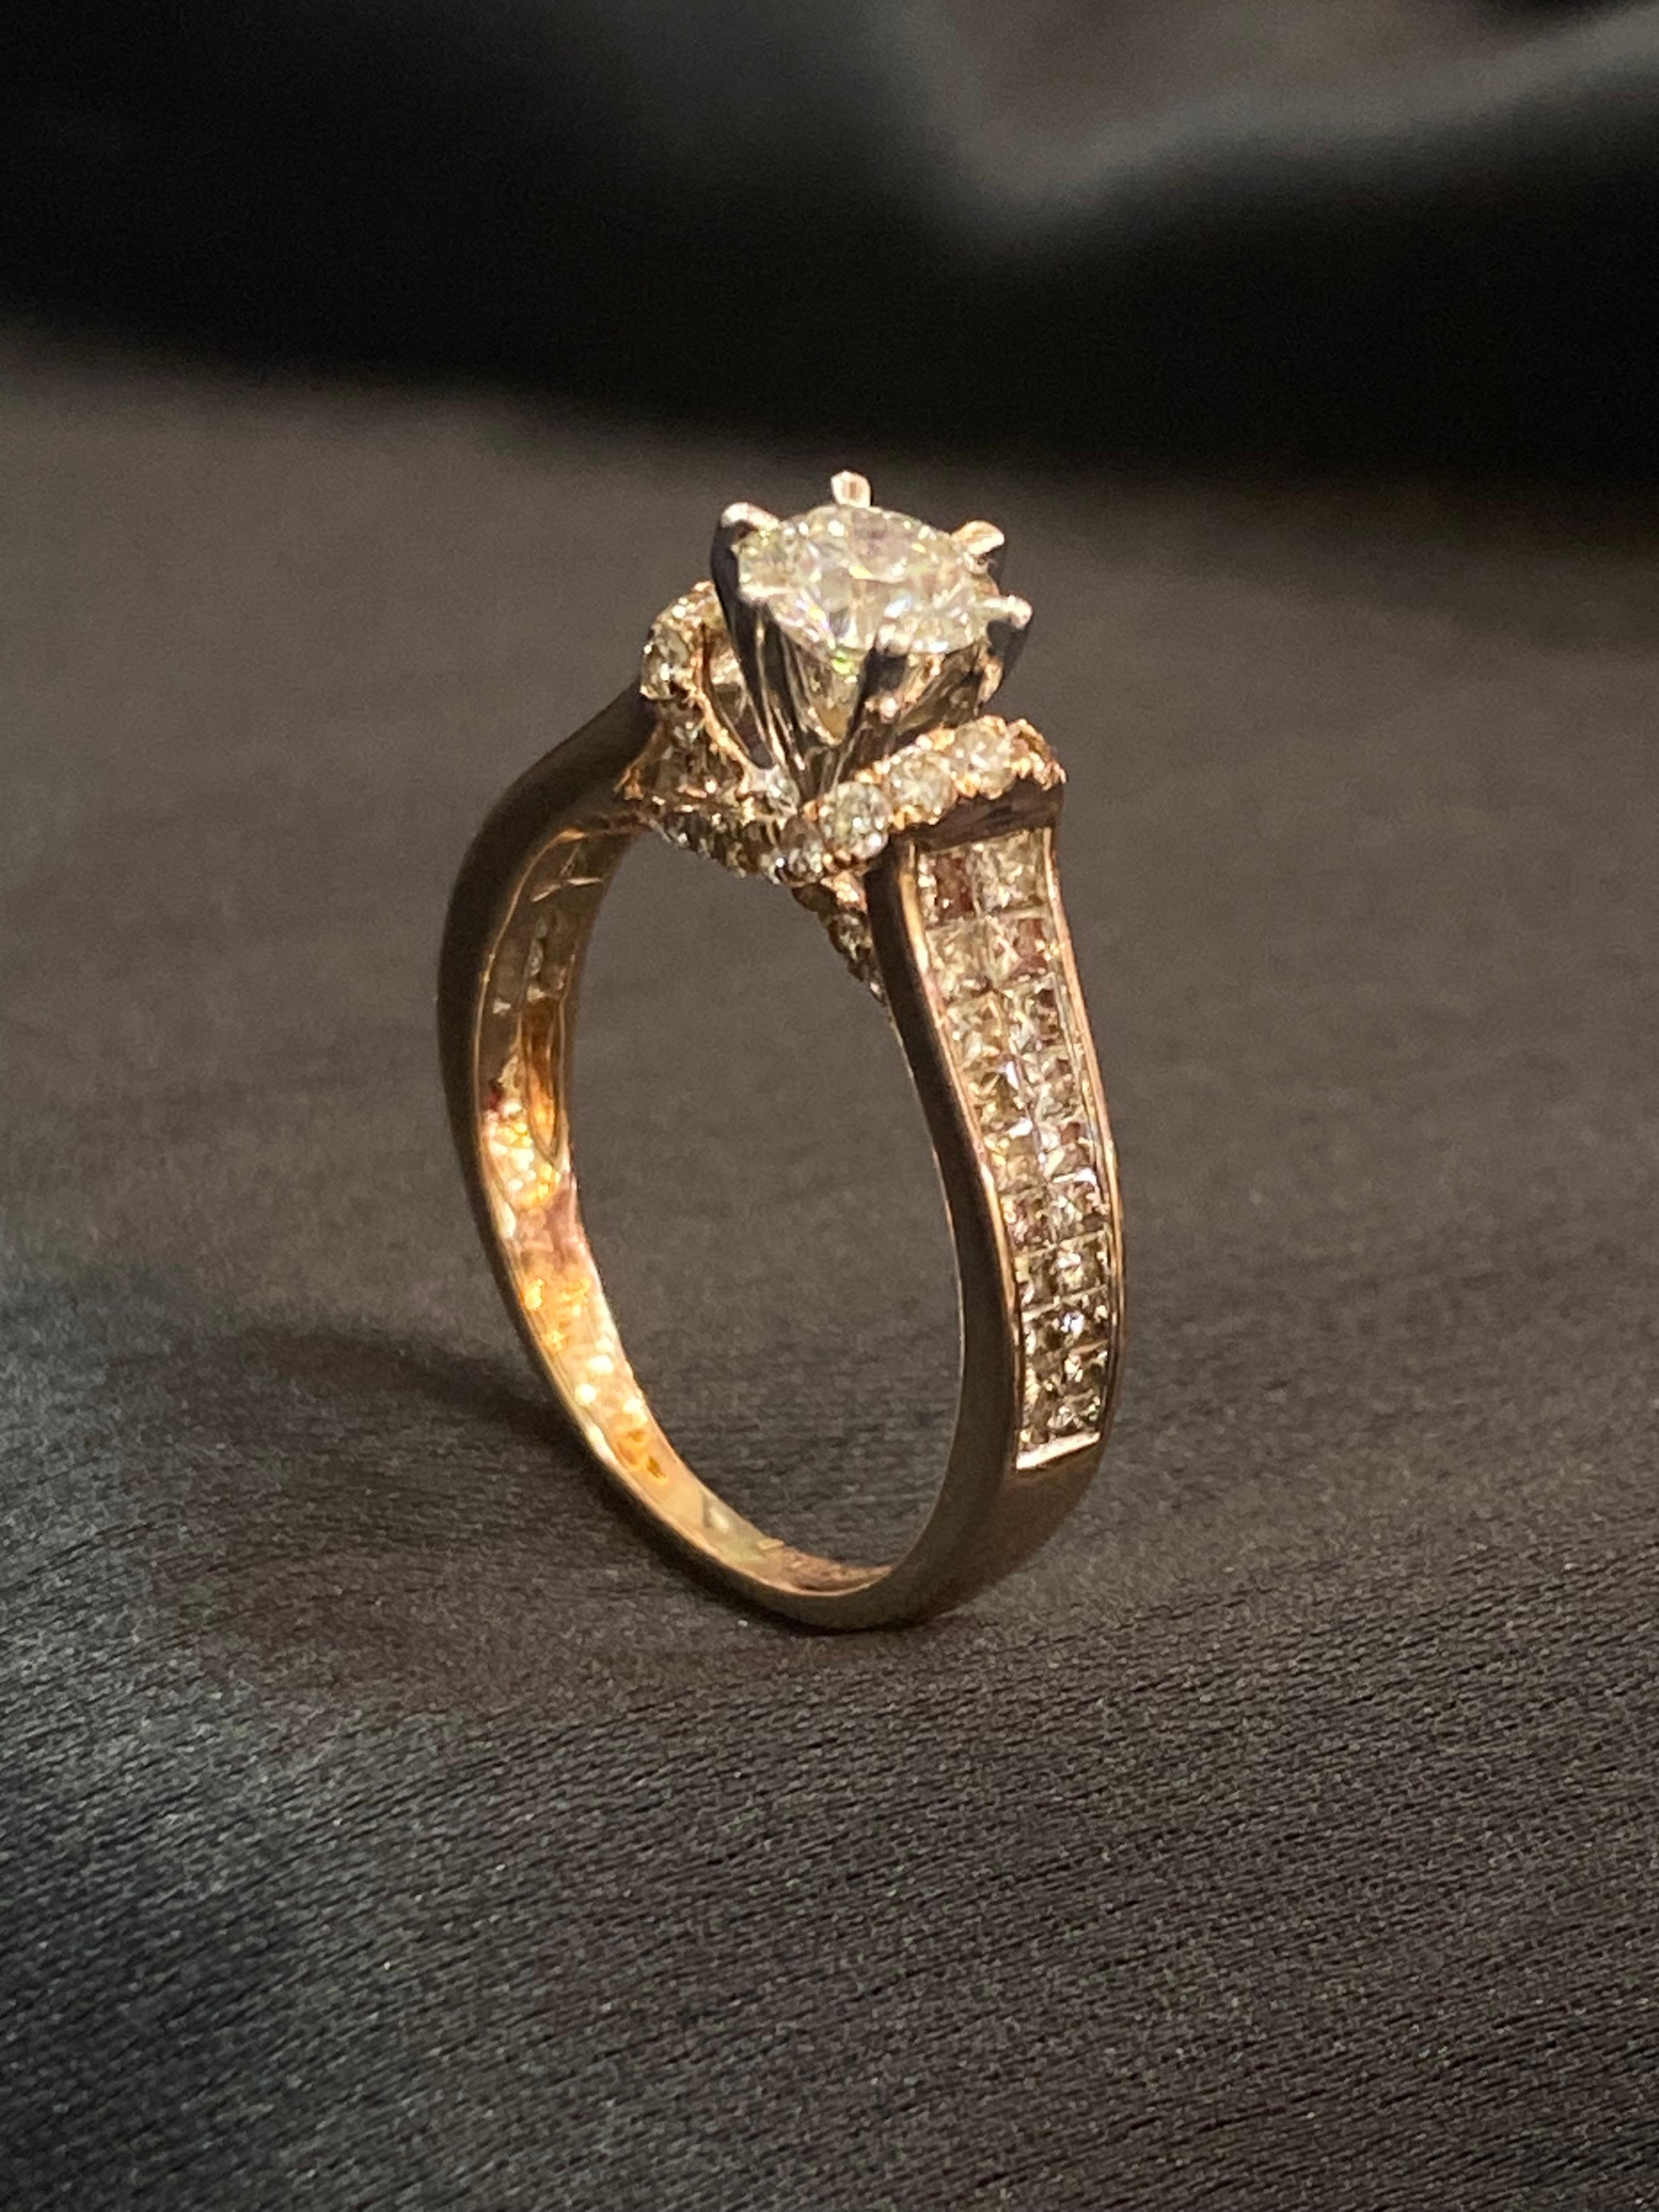 Embrassez la splendeur des diamants étincelants et de l'or avec cette bague solitaire exclusive. Avec ses 1,60 carats de diamants princesse ronds en or 14 carats, il témoigne du luxe et du raffinement. Faites-le vôtre et laissez-vous séduire par son